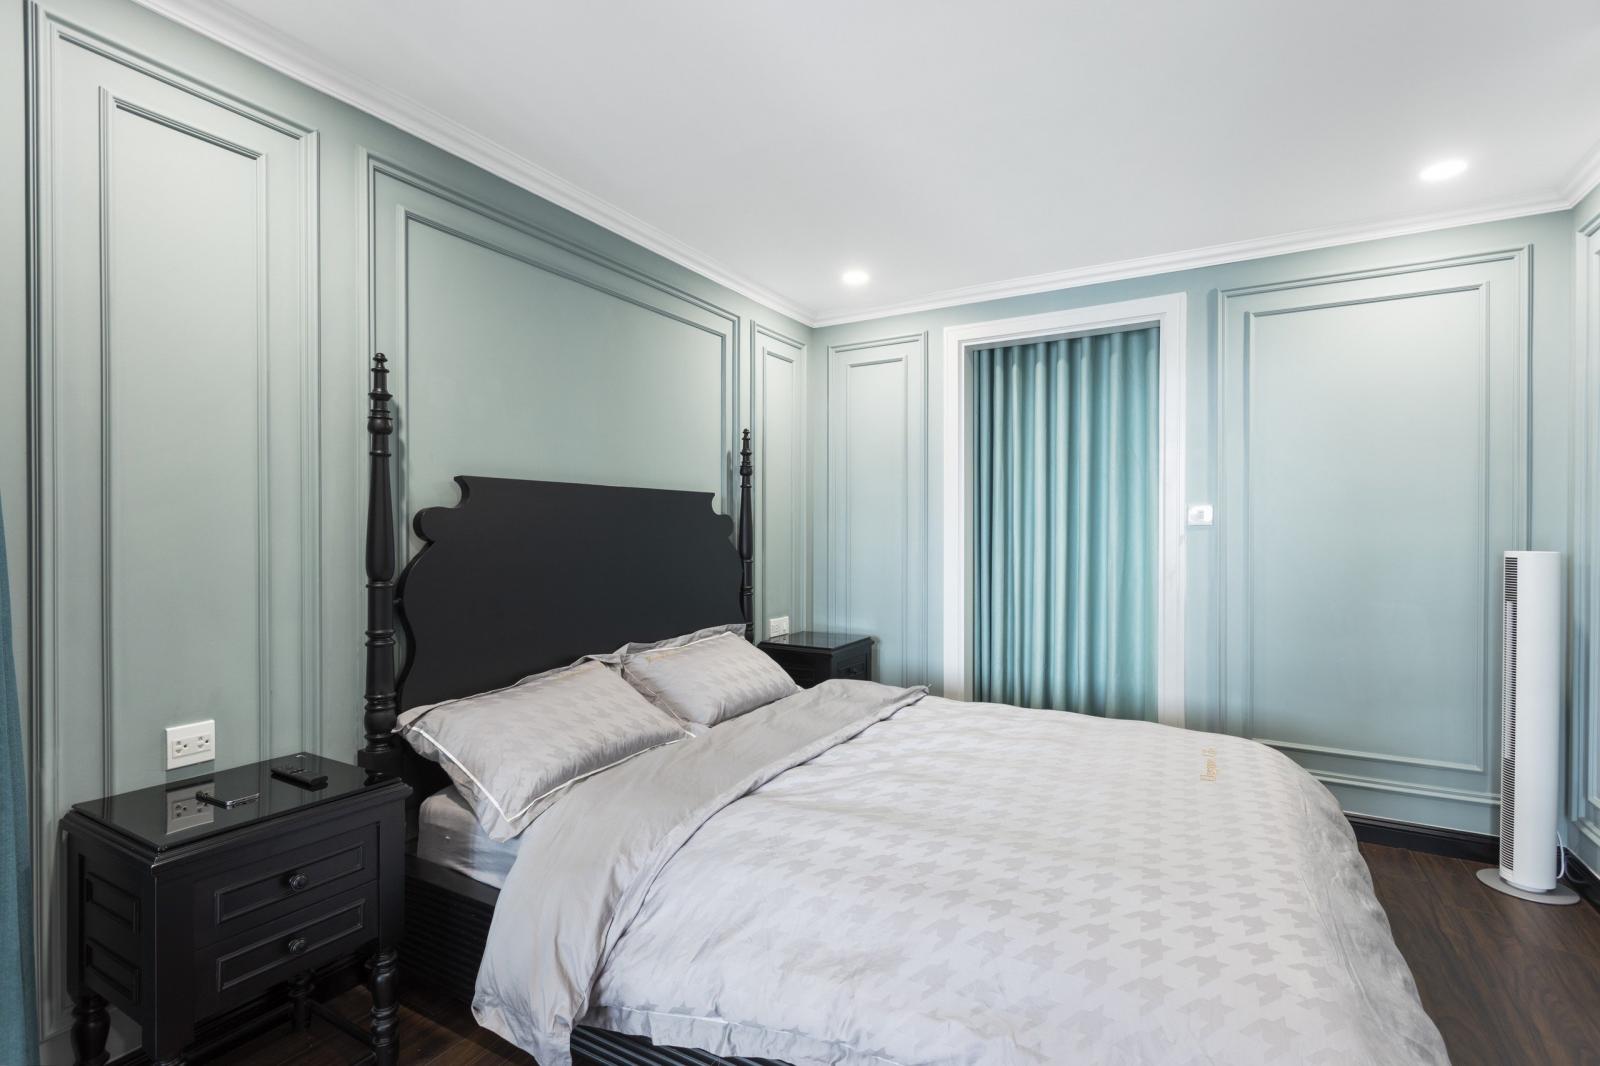 Với tông màu xanh pastel nhẹ nhàng cho toàn bộ tường phòng ngủ, kiến trúc sư mong muốn tạo ra không gian ngủ nghỉ thư thái, thoải mái nhất.